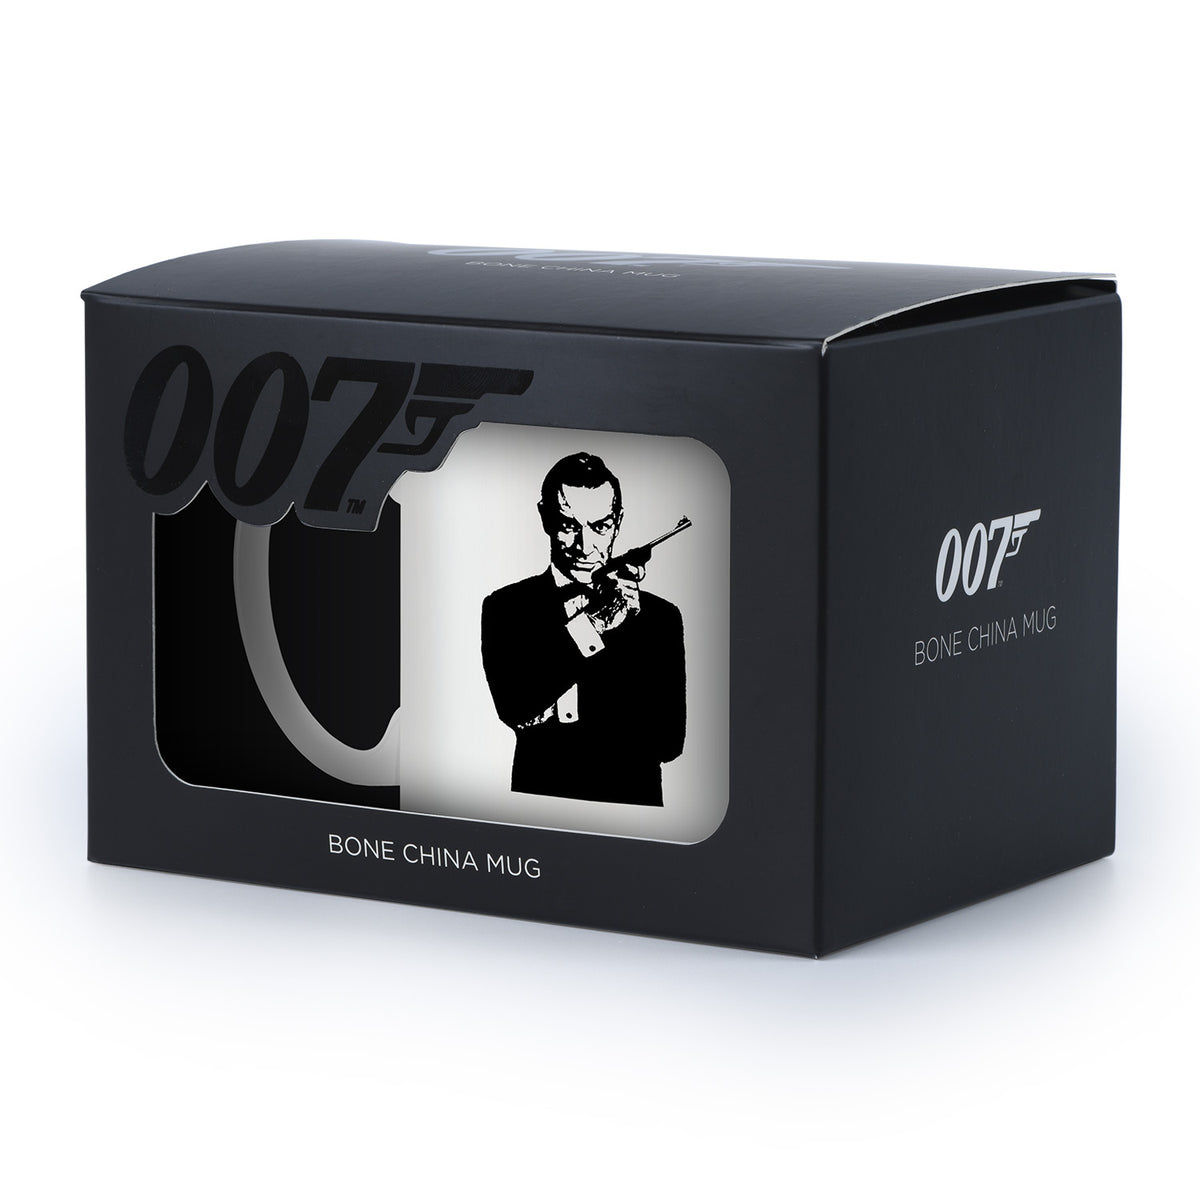 James Bond Sean Connery Bone China Mug